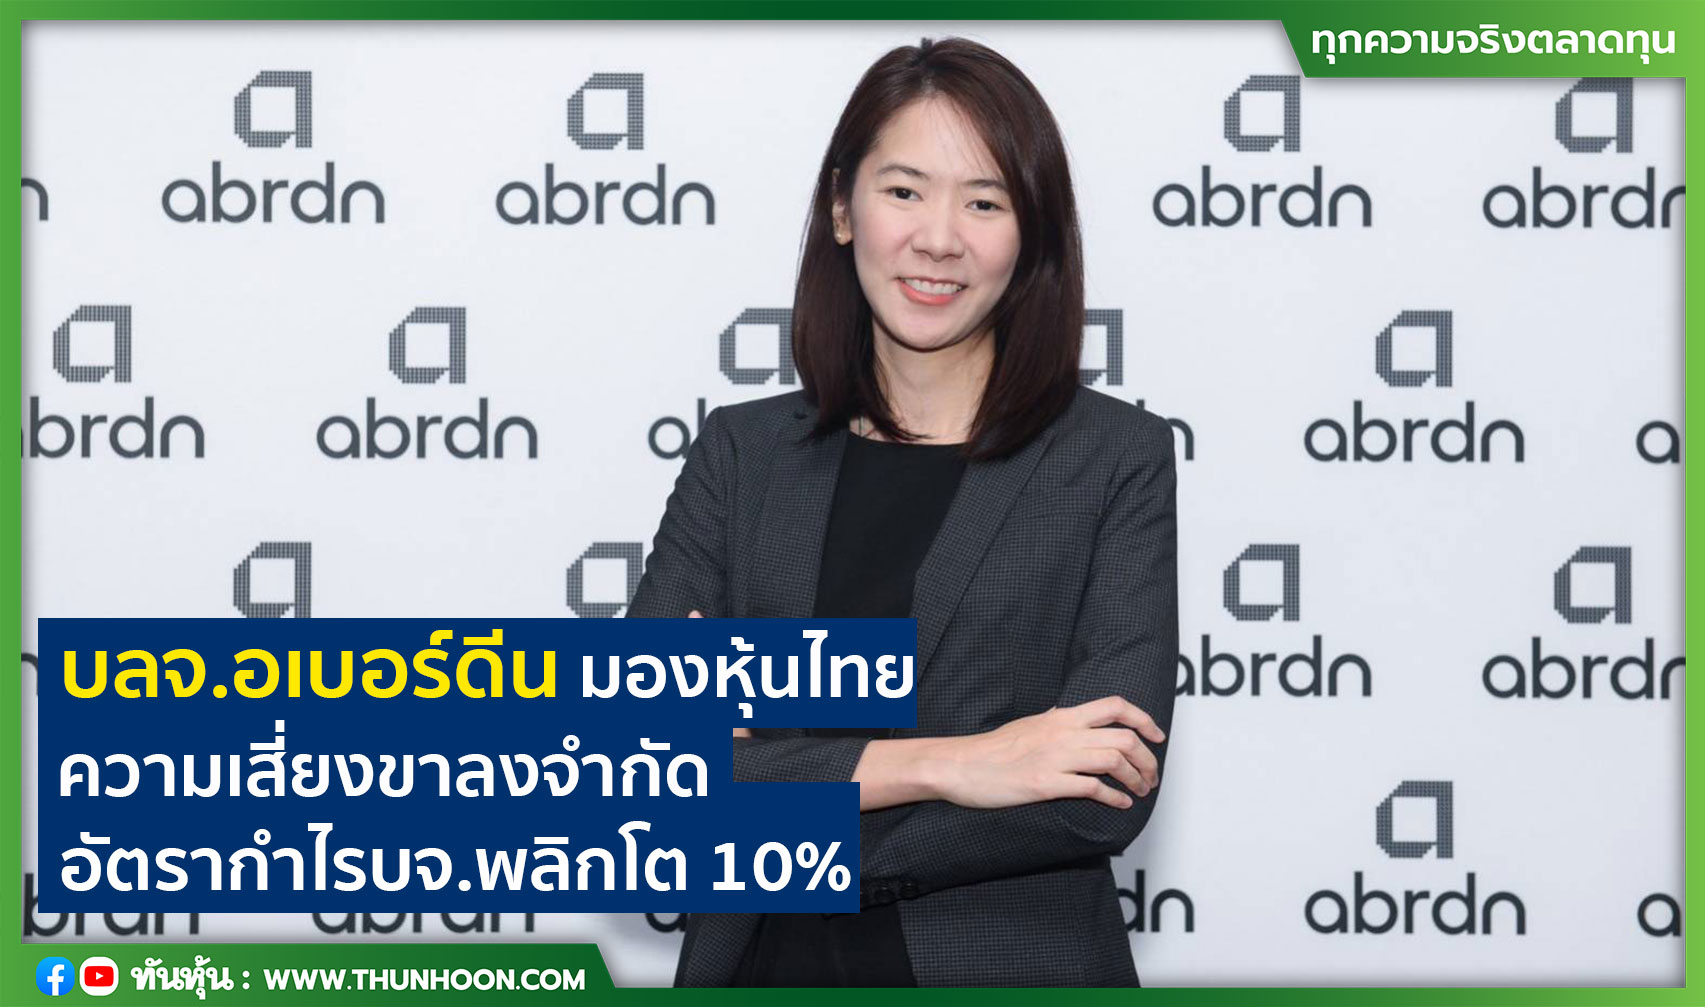 บลจ.อเบอร์ดีน มองหุ้นไทย ความเสี่ยงขาลงจำกัด  อัตรากำไรบจ.พลิกโต 10%